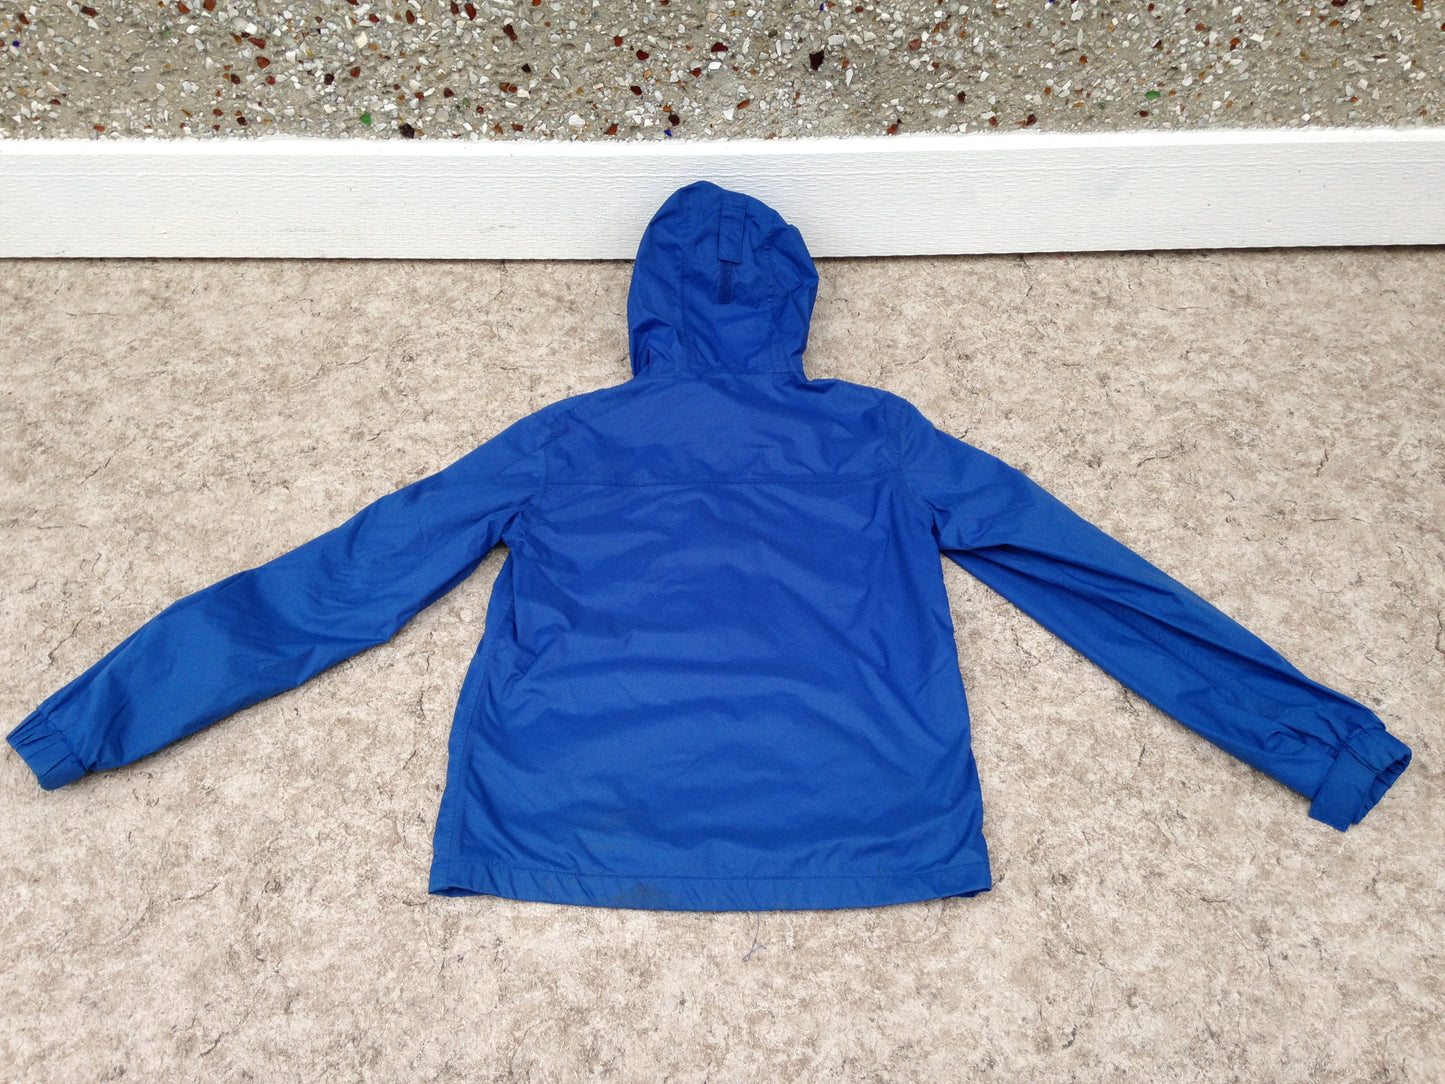 Rain Coat Child Size 11-12 MTN Warehouse Blue Orange Excellent